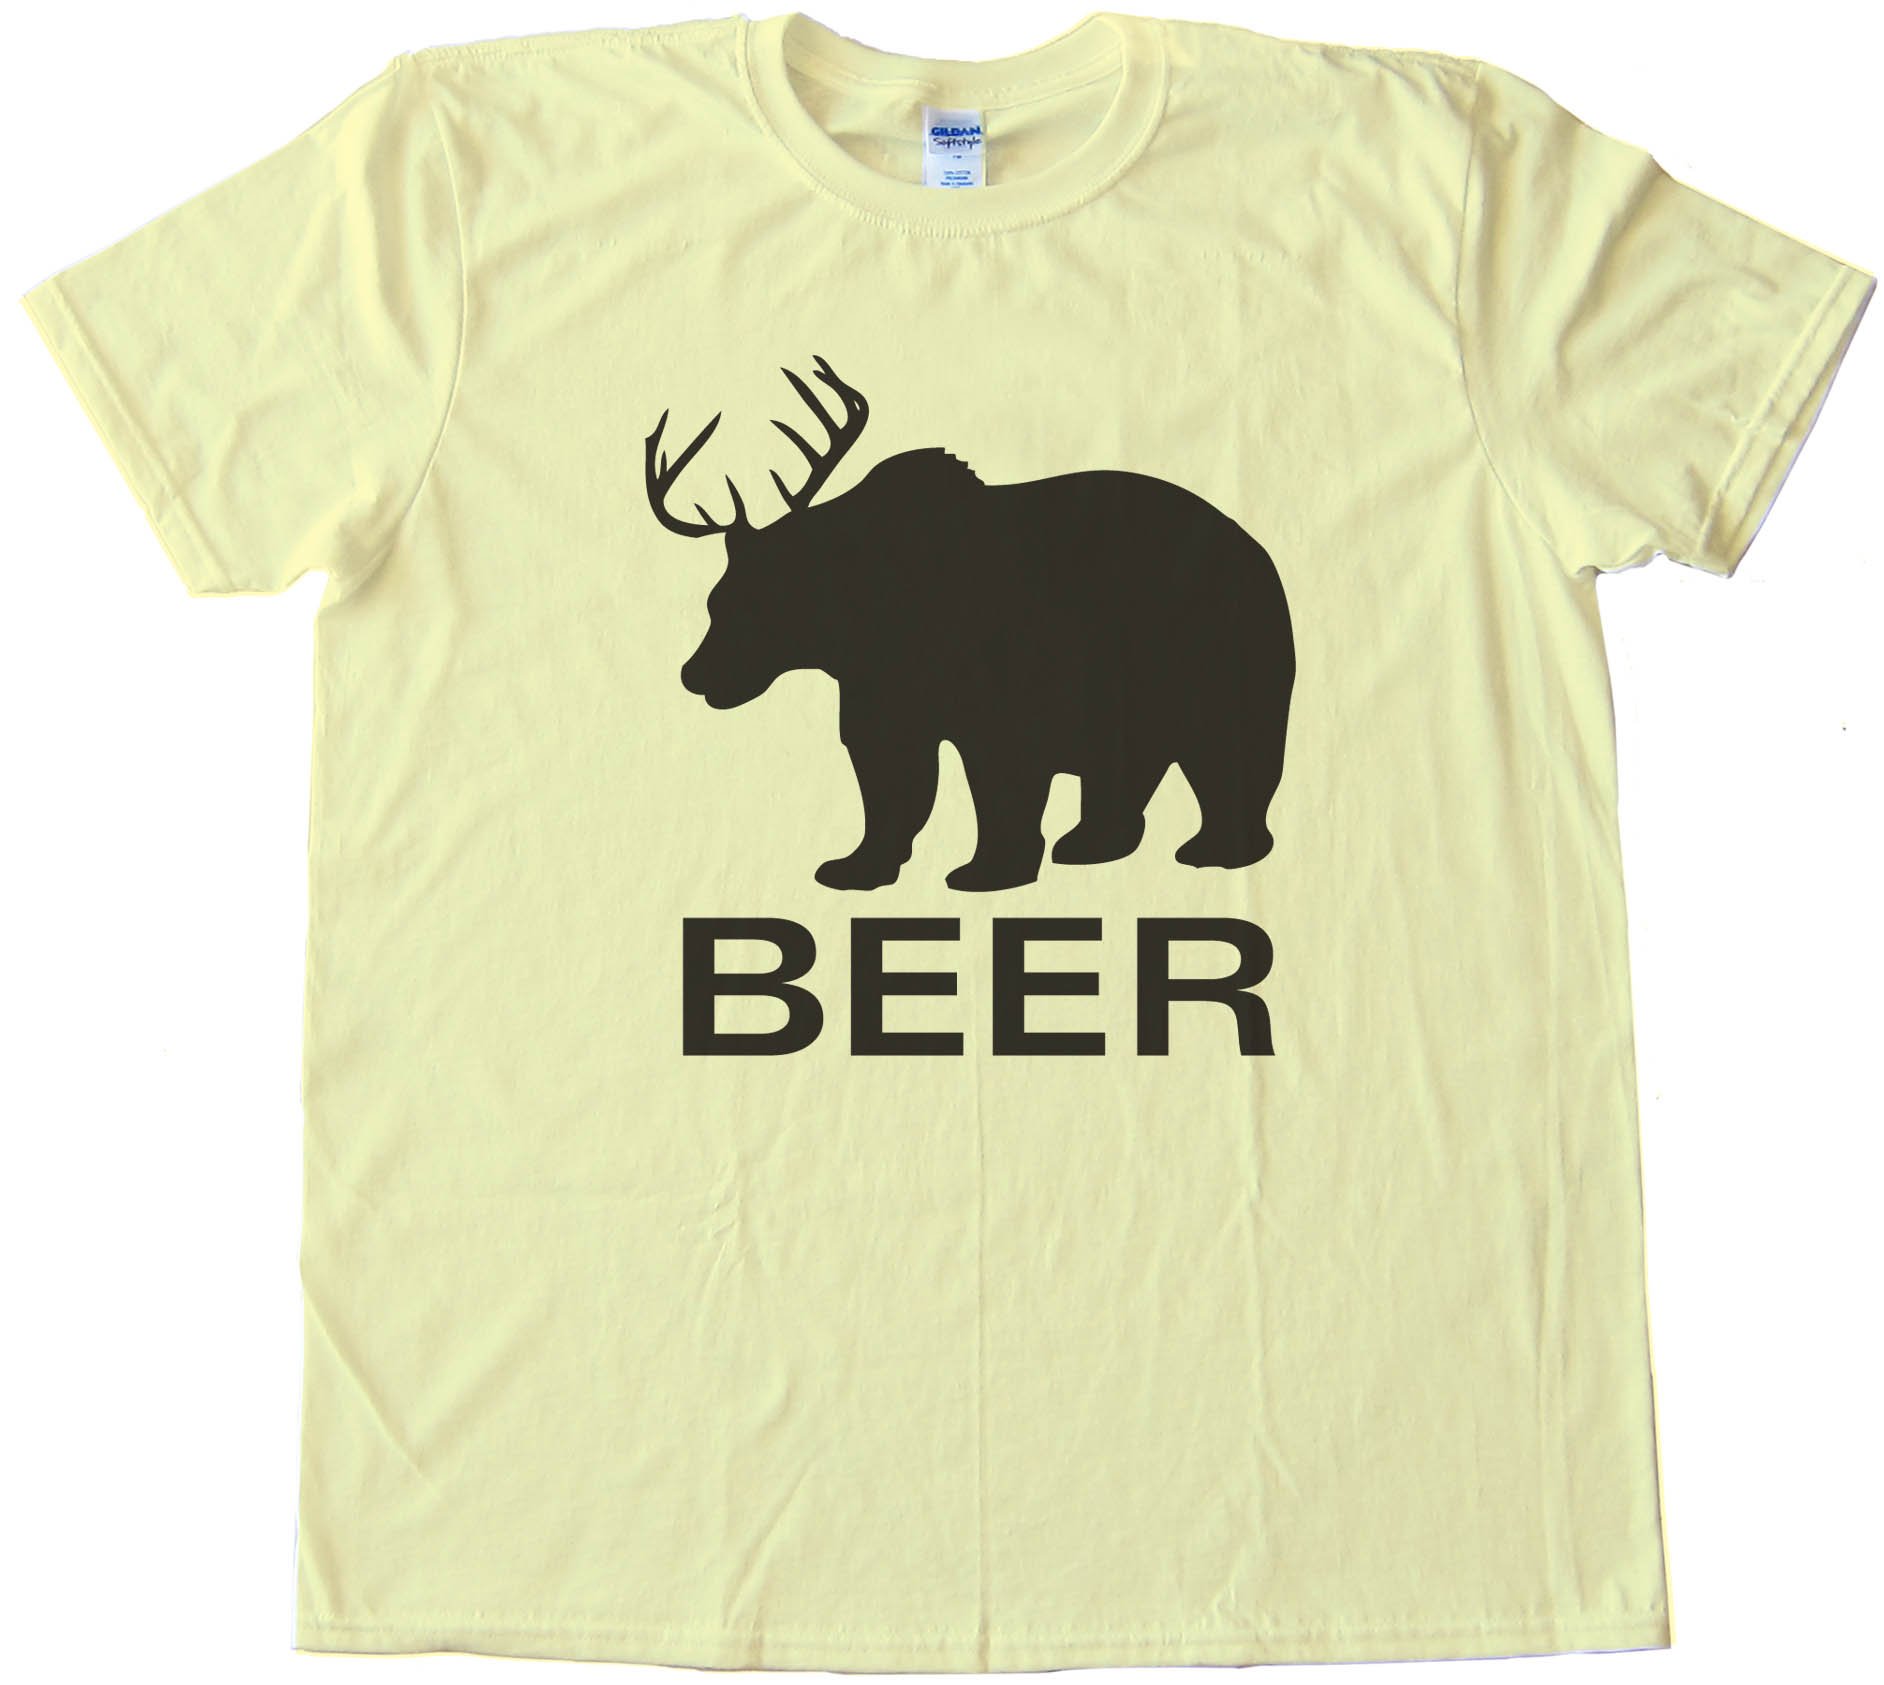 Bear Deer Beer - Tee Shirt